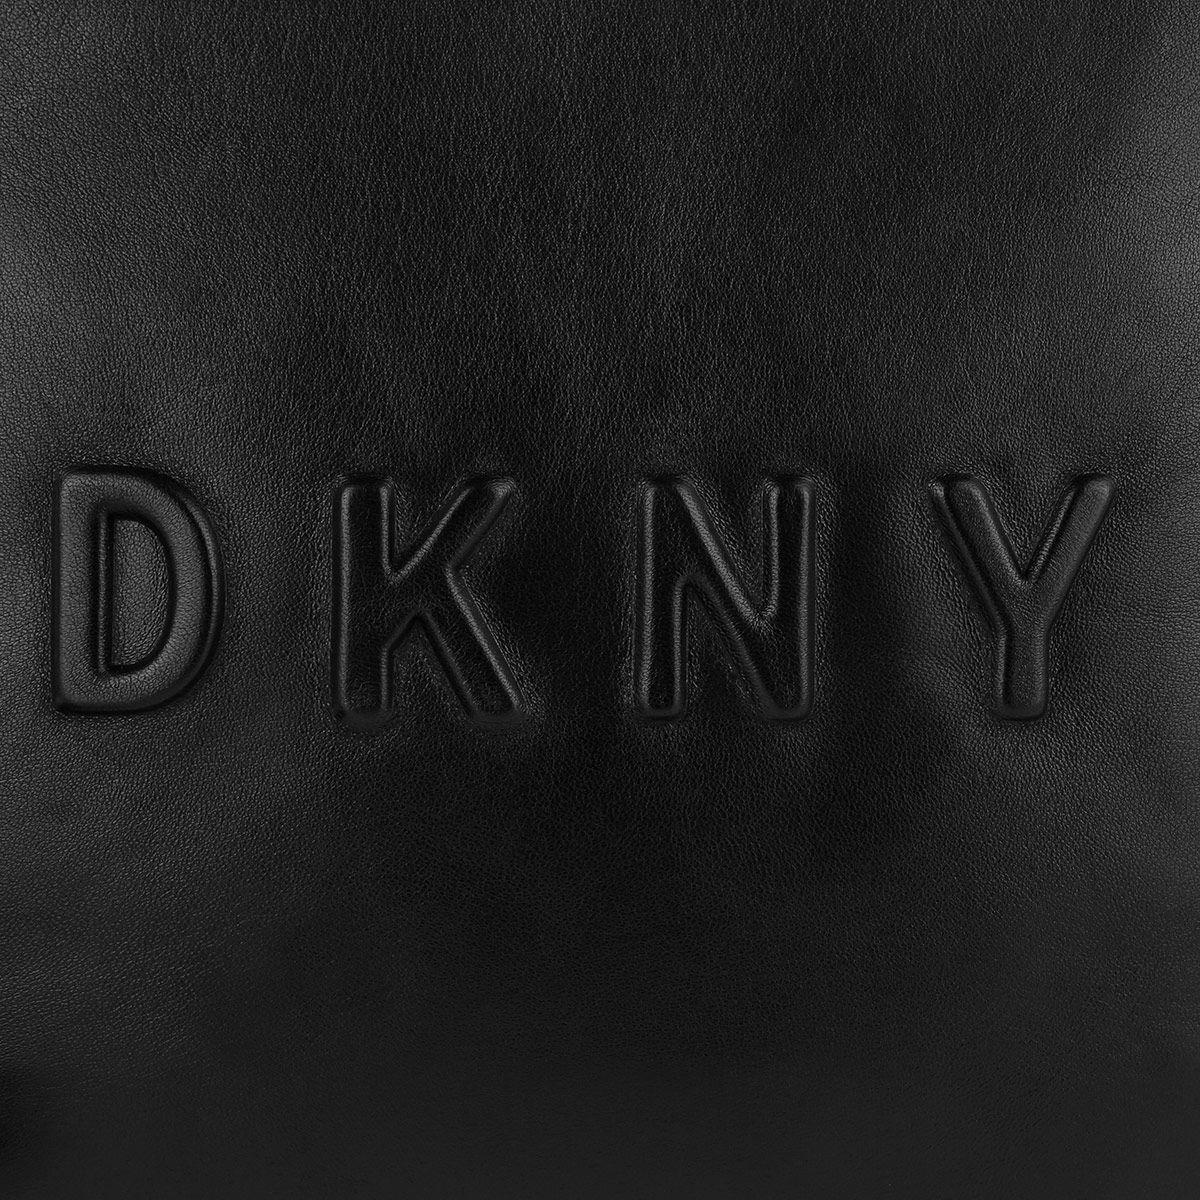 Debossed Logo - DKNY Debossed Logo Crossbody Bag Large Black Black In Black